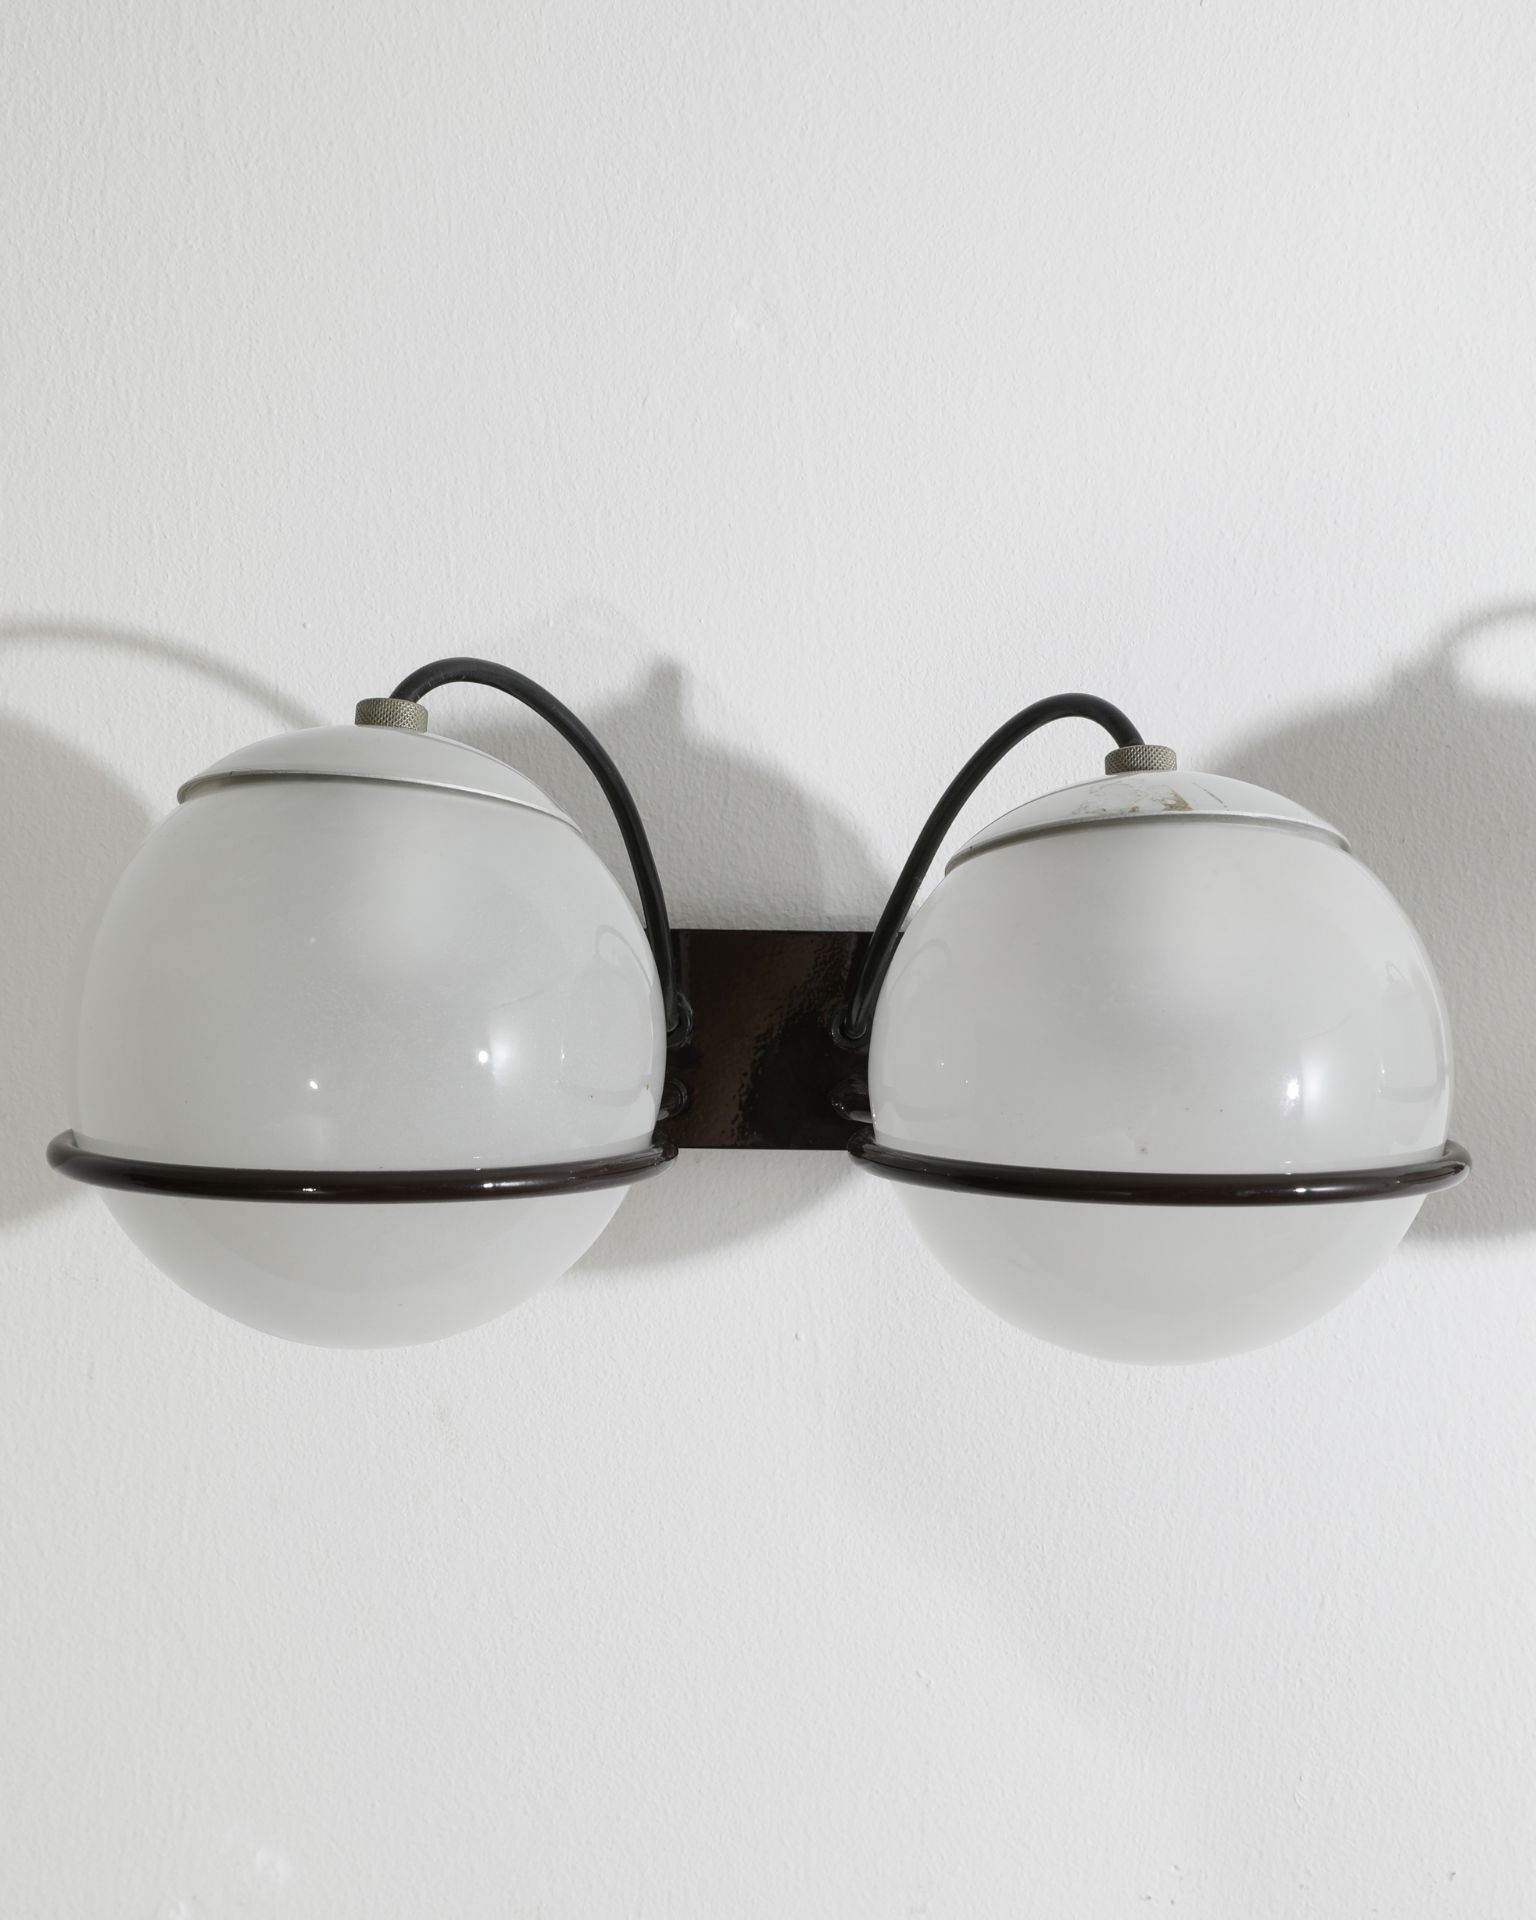 Gino Sarfatti, Arteluce, 2 Wall Lamps Model 237/2 - Image 3 of 4